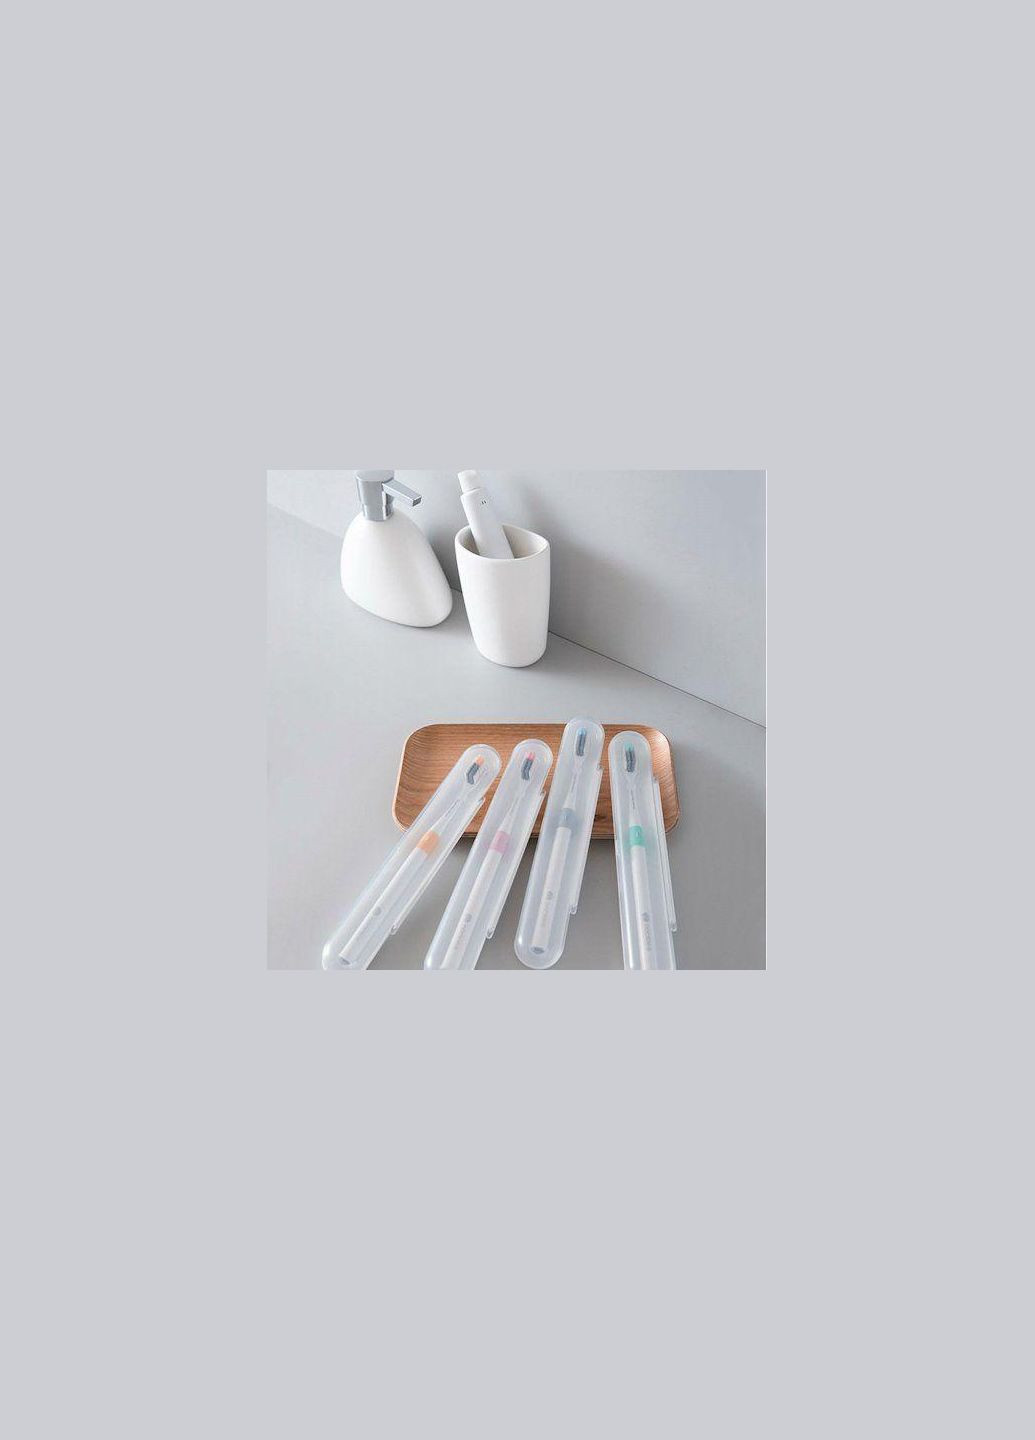 Зубная щетка Doctor B Colors набор 4 штуки Xiaomi (280877041)